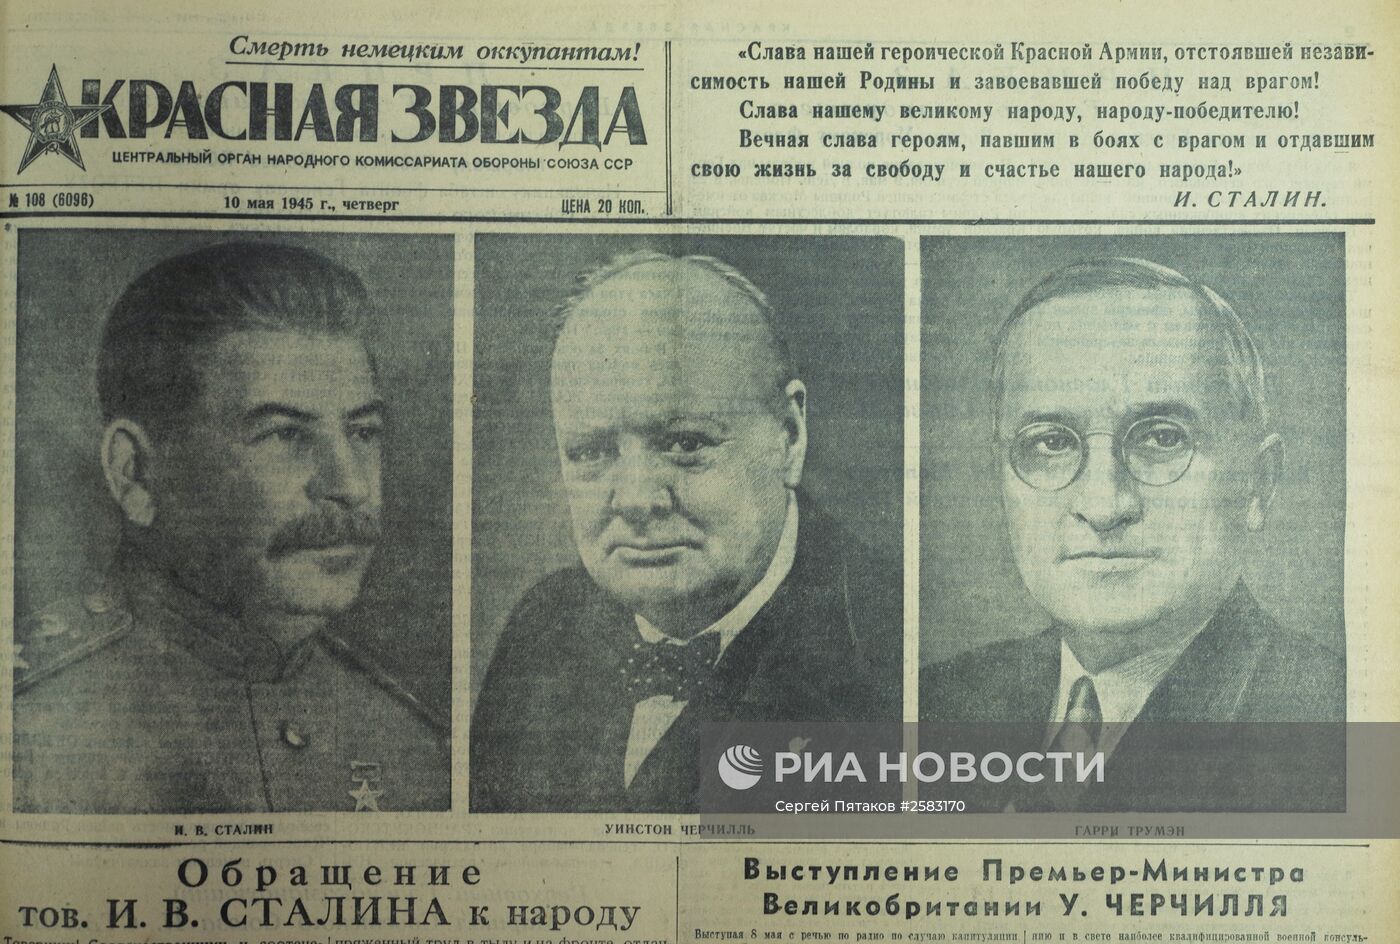 Фотоматериалы и публикации газеты "Красная звезда" в период Великой Отечественной войны